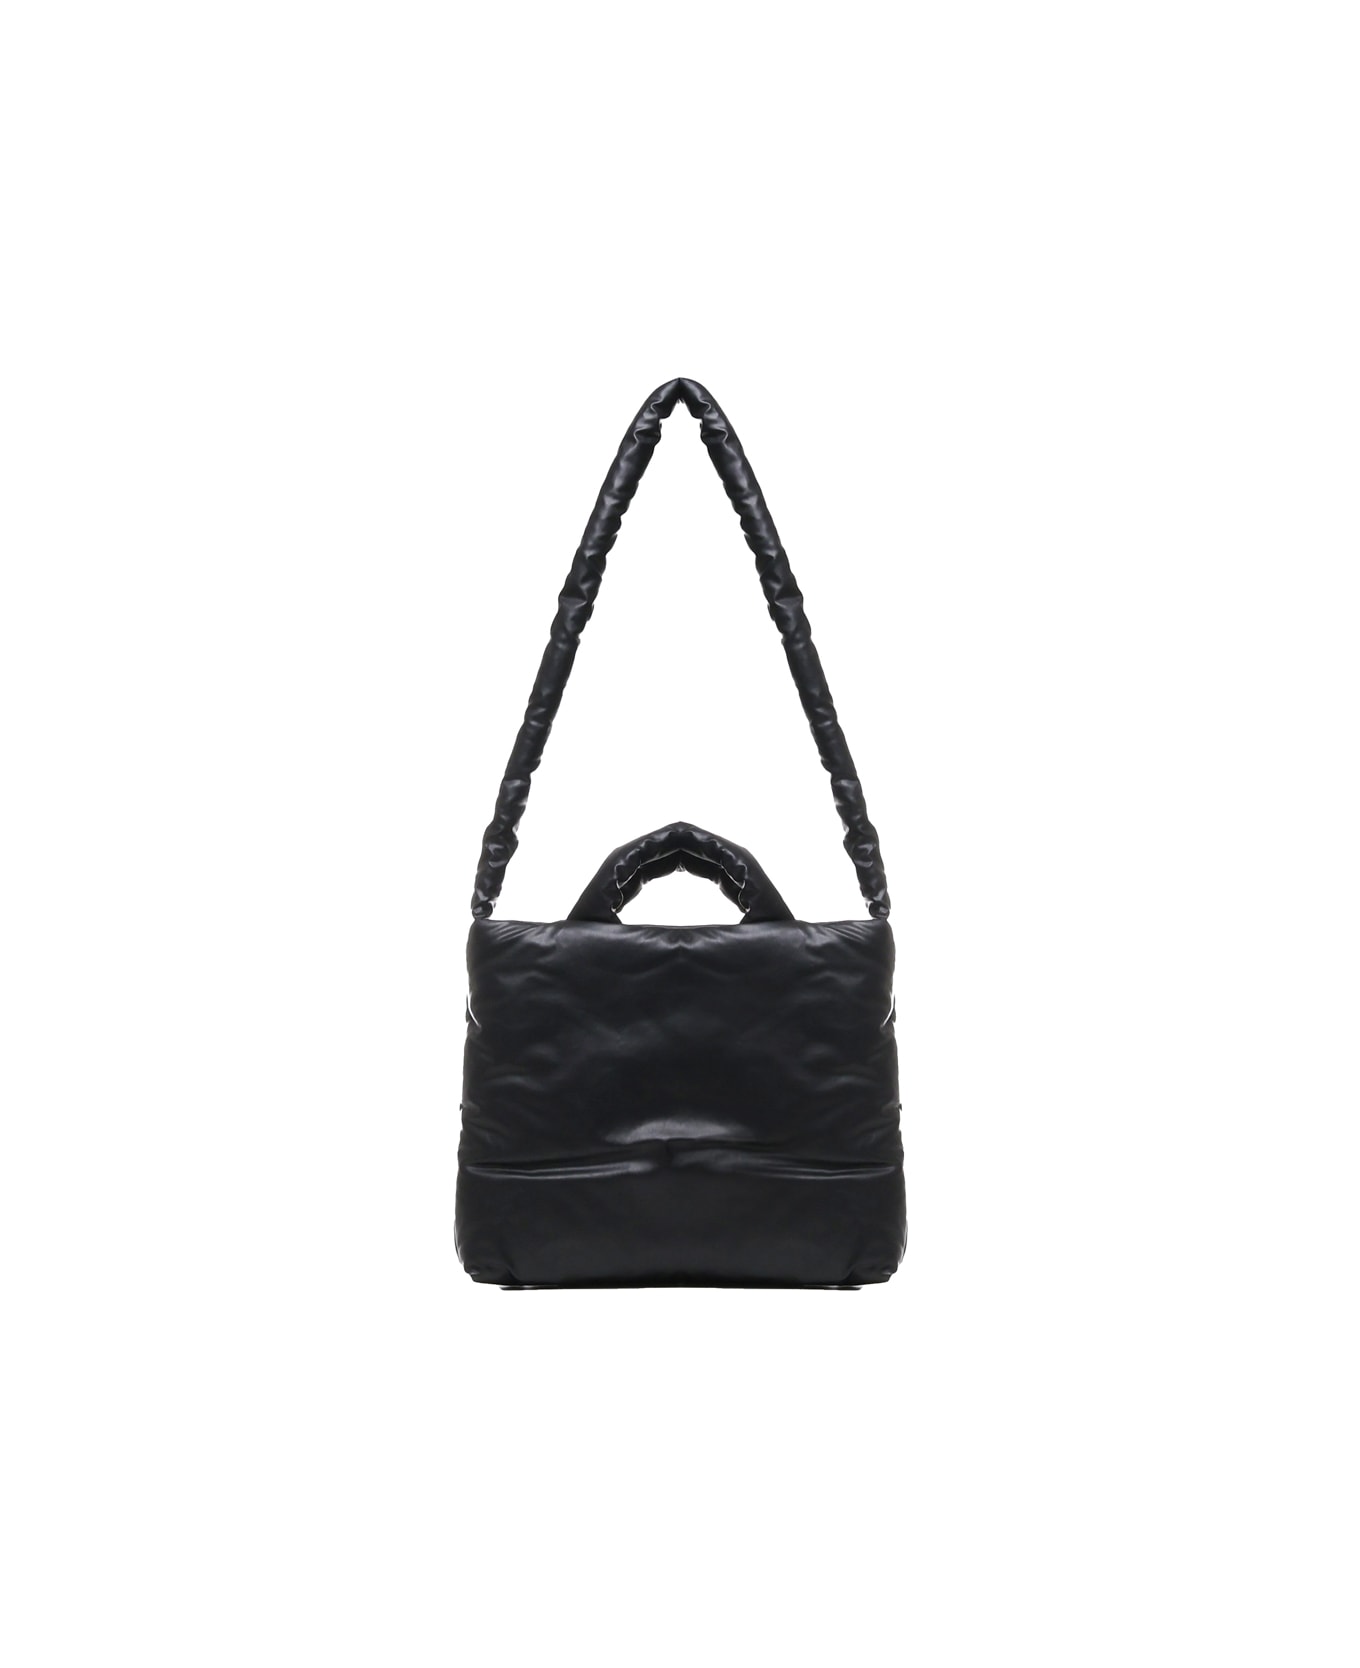 KASSL Editions Pillow Small Oil Bag - Black トートバッグ